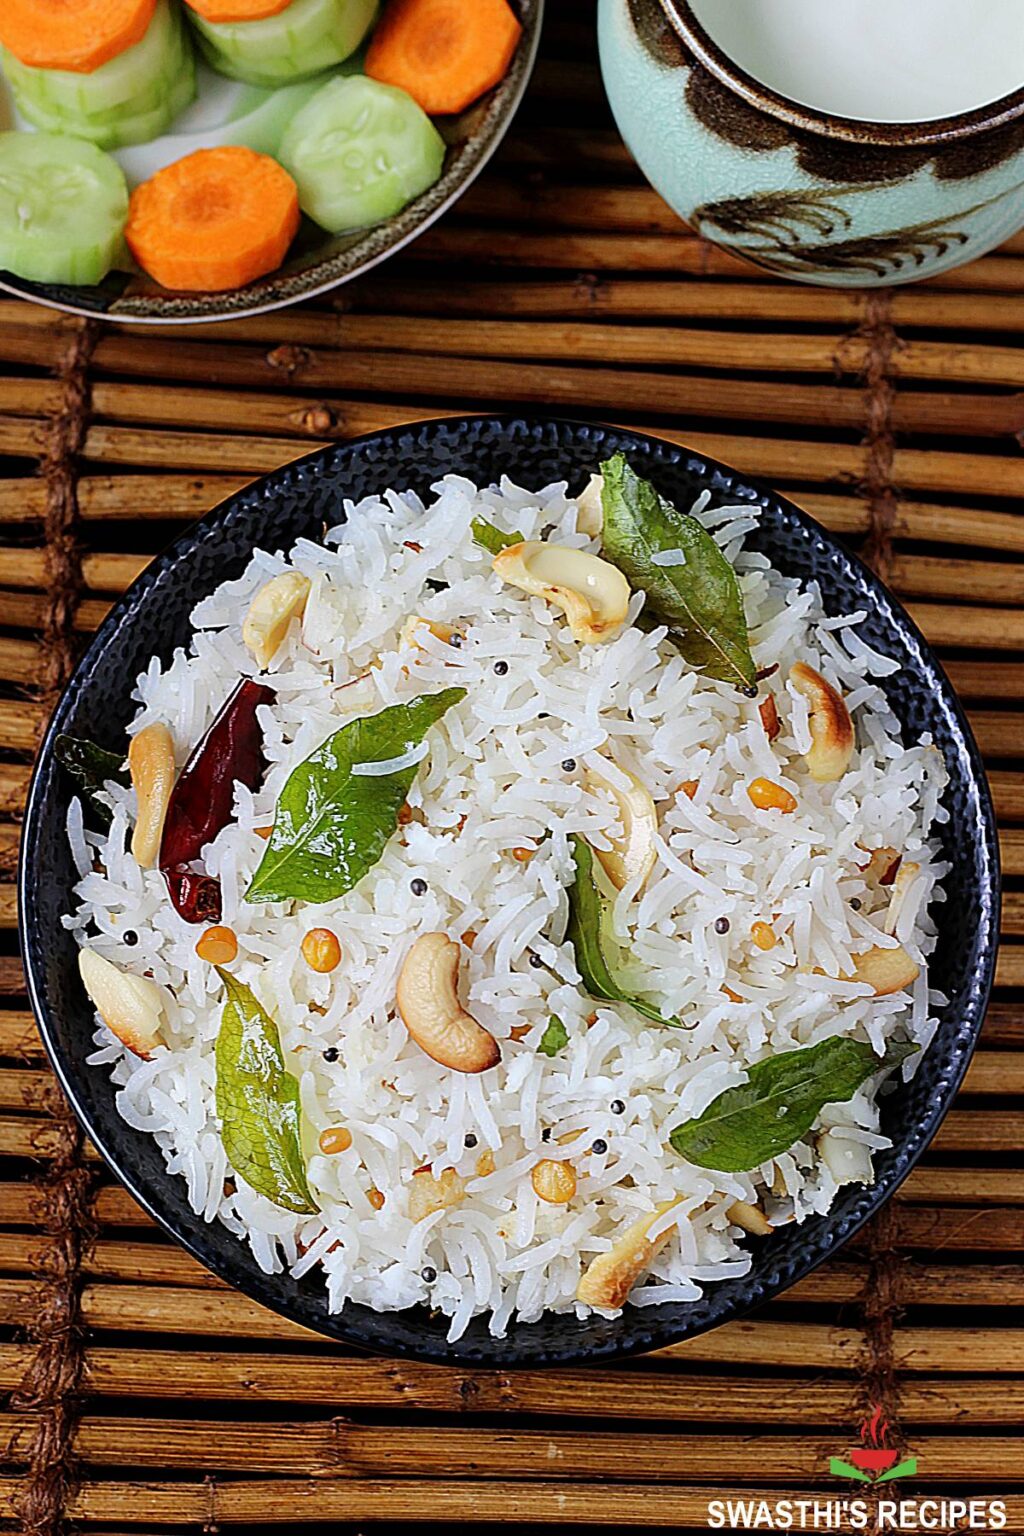 Coconut rice recipe (Thengai sadam) - Swasthi's Recipes